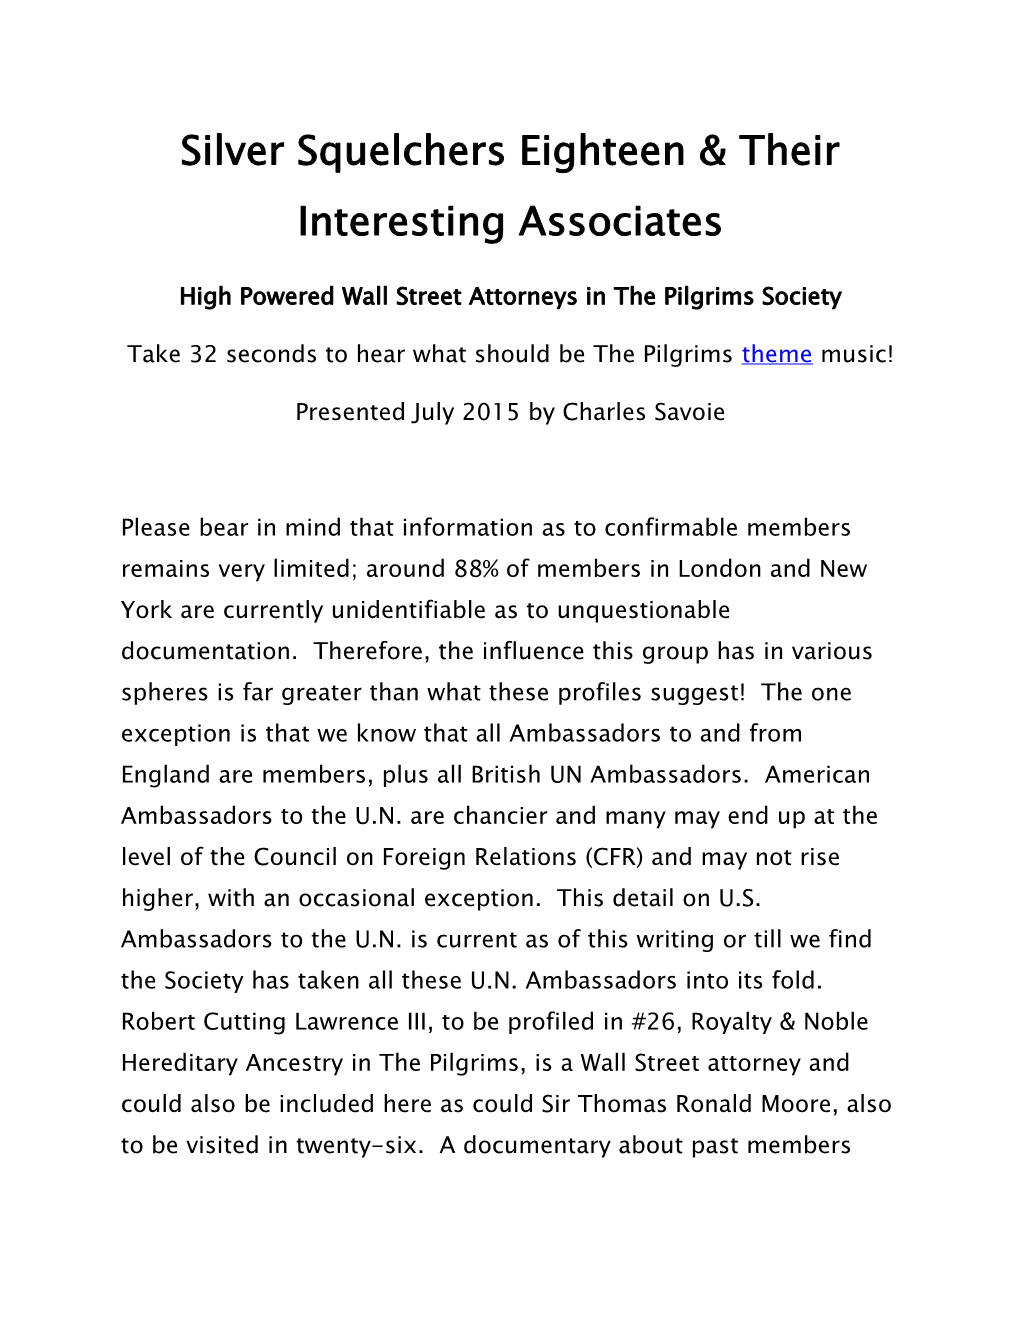 Silver Squelchers Eighteen & Their Interesting Associates